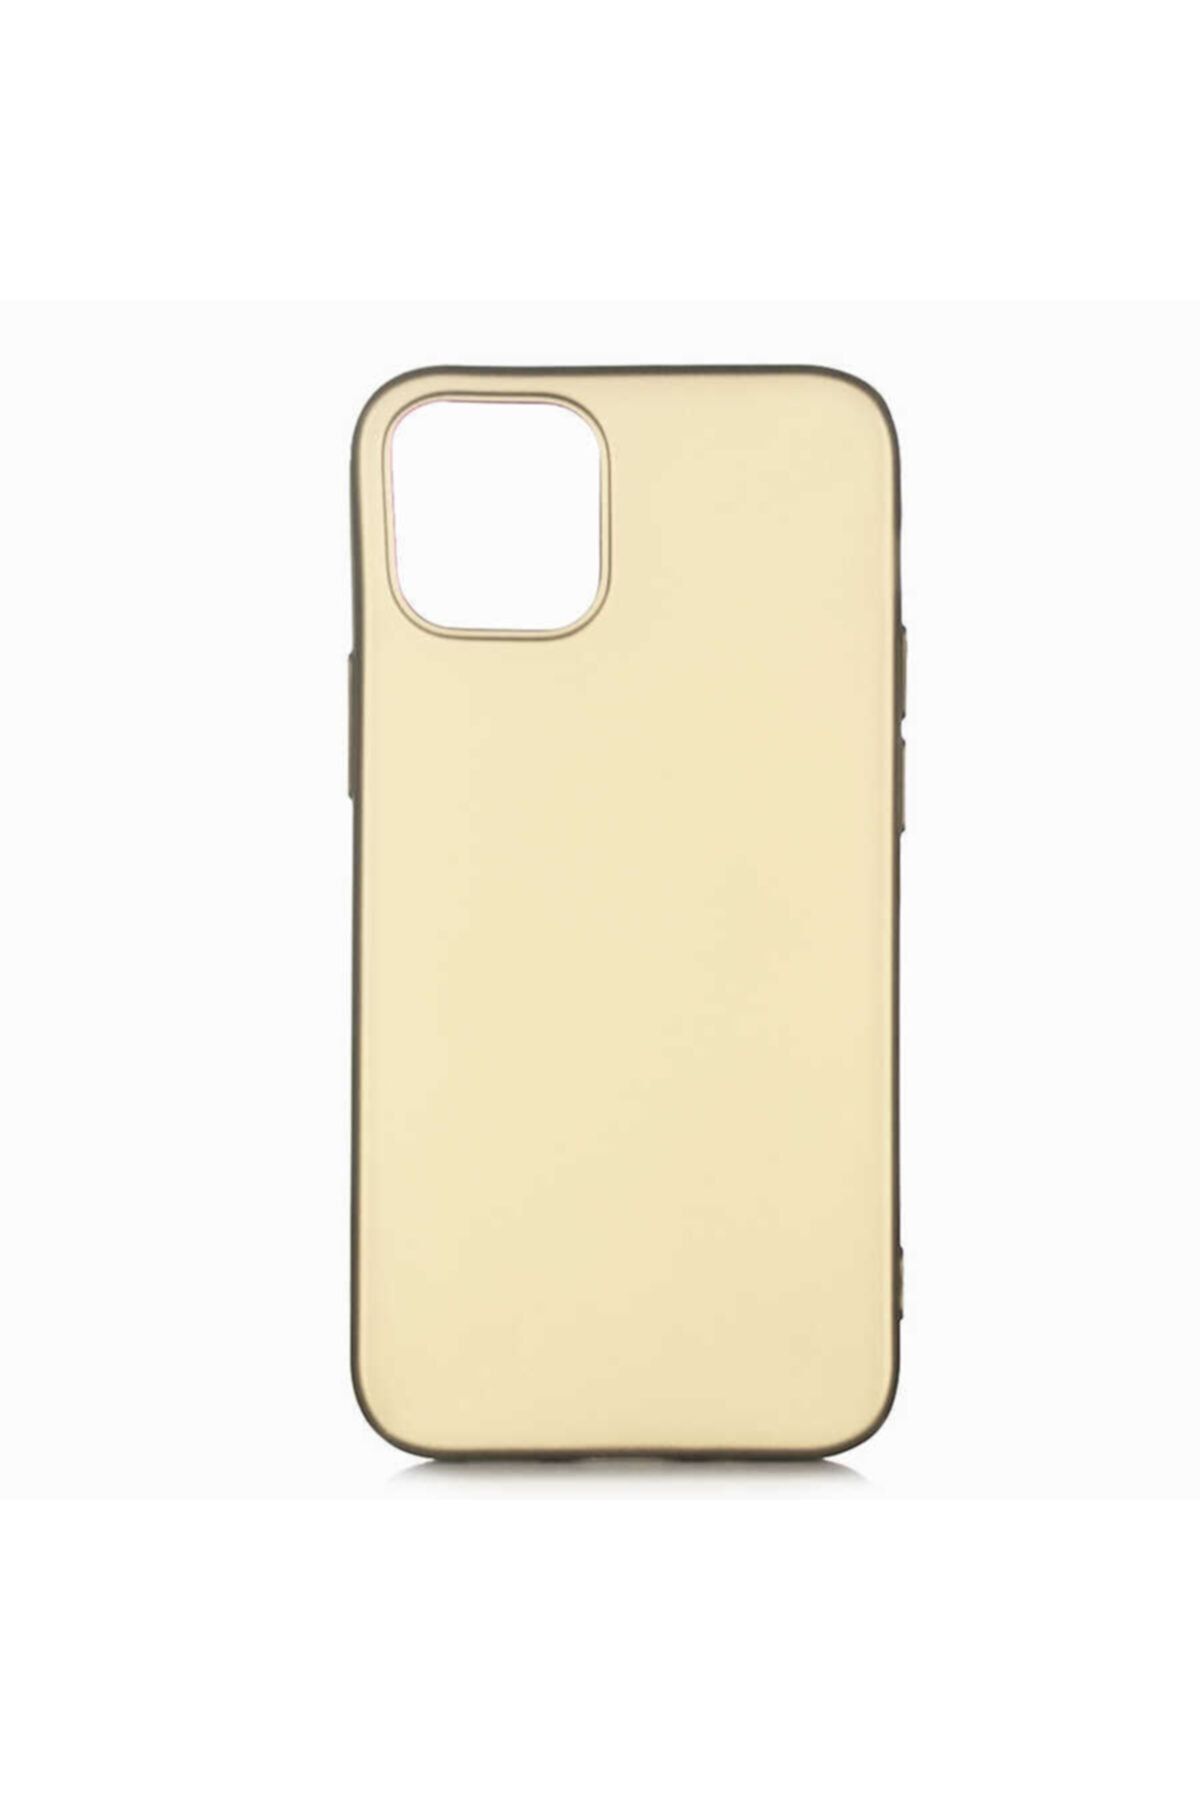 İncisoft Apple Iphone 12 Mini Uyumlu Ince Yumuşak Soft Tasarım Renkli Silikon Kılıf